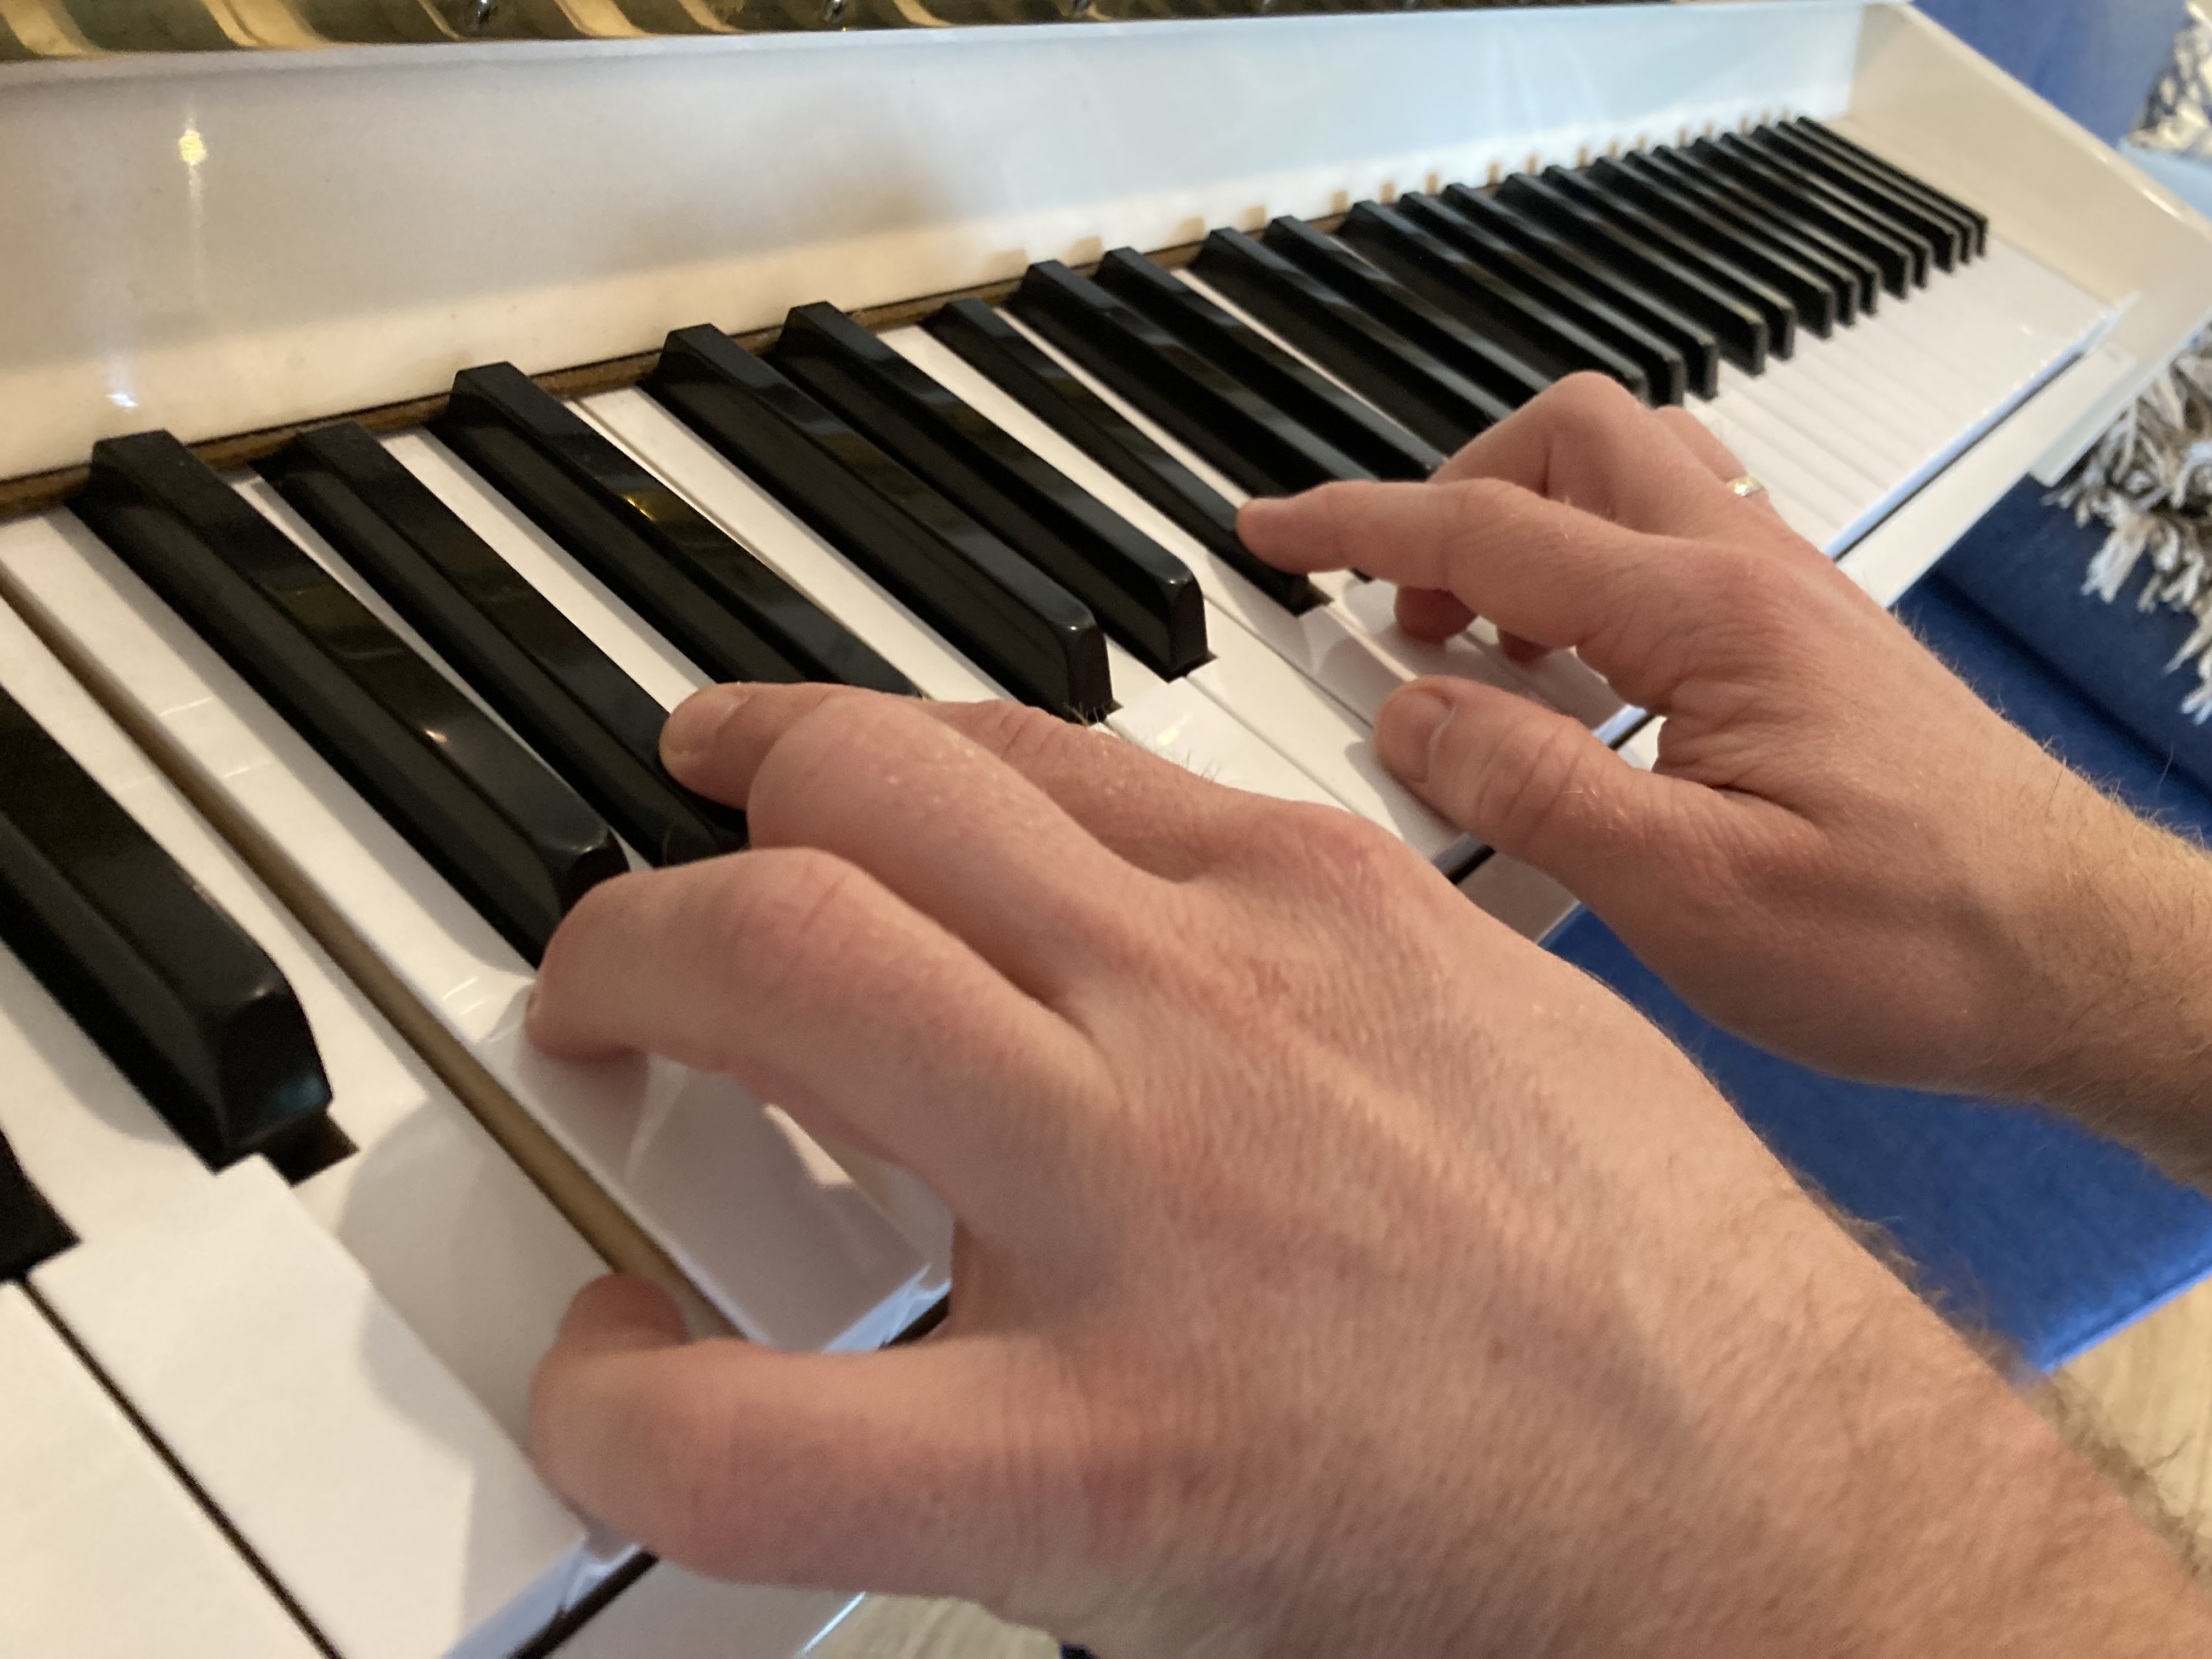 Klaviertasten und Hände, die darauf spielen